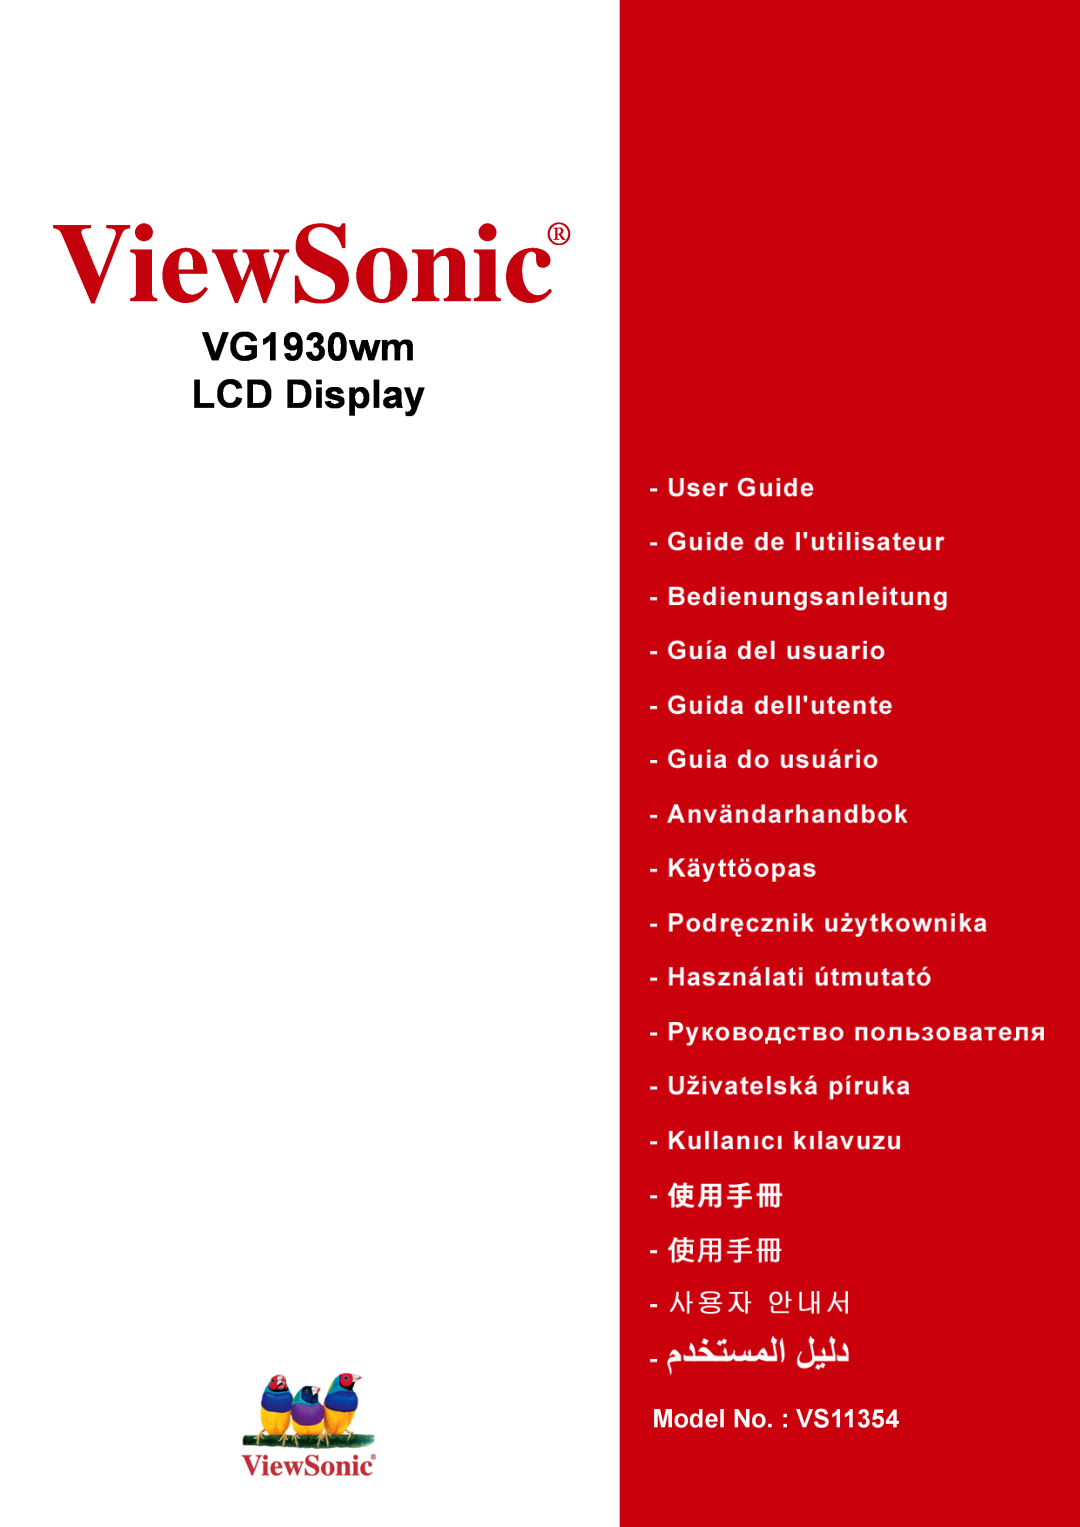 ViewSonic manual ViewSonic, VG1930wm LCD Display, Model No. VS11419 